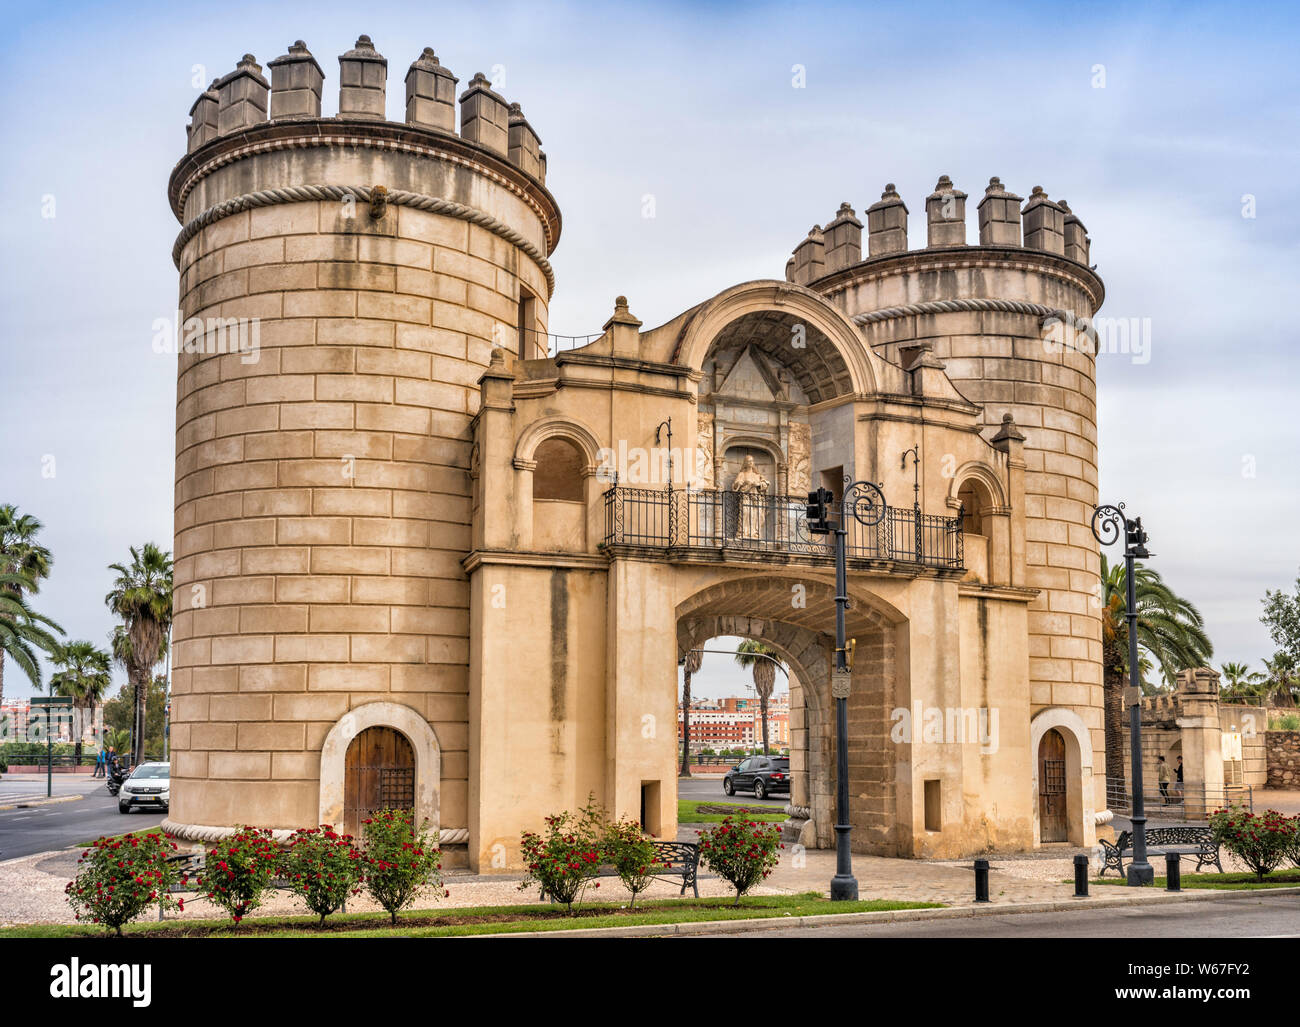 Puerta de Palmas (Palms Gate), 16th century, in Badajoz, Badajoz province,  Extremadura, Spain Stock Photo - Alamy